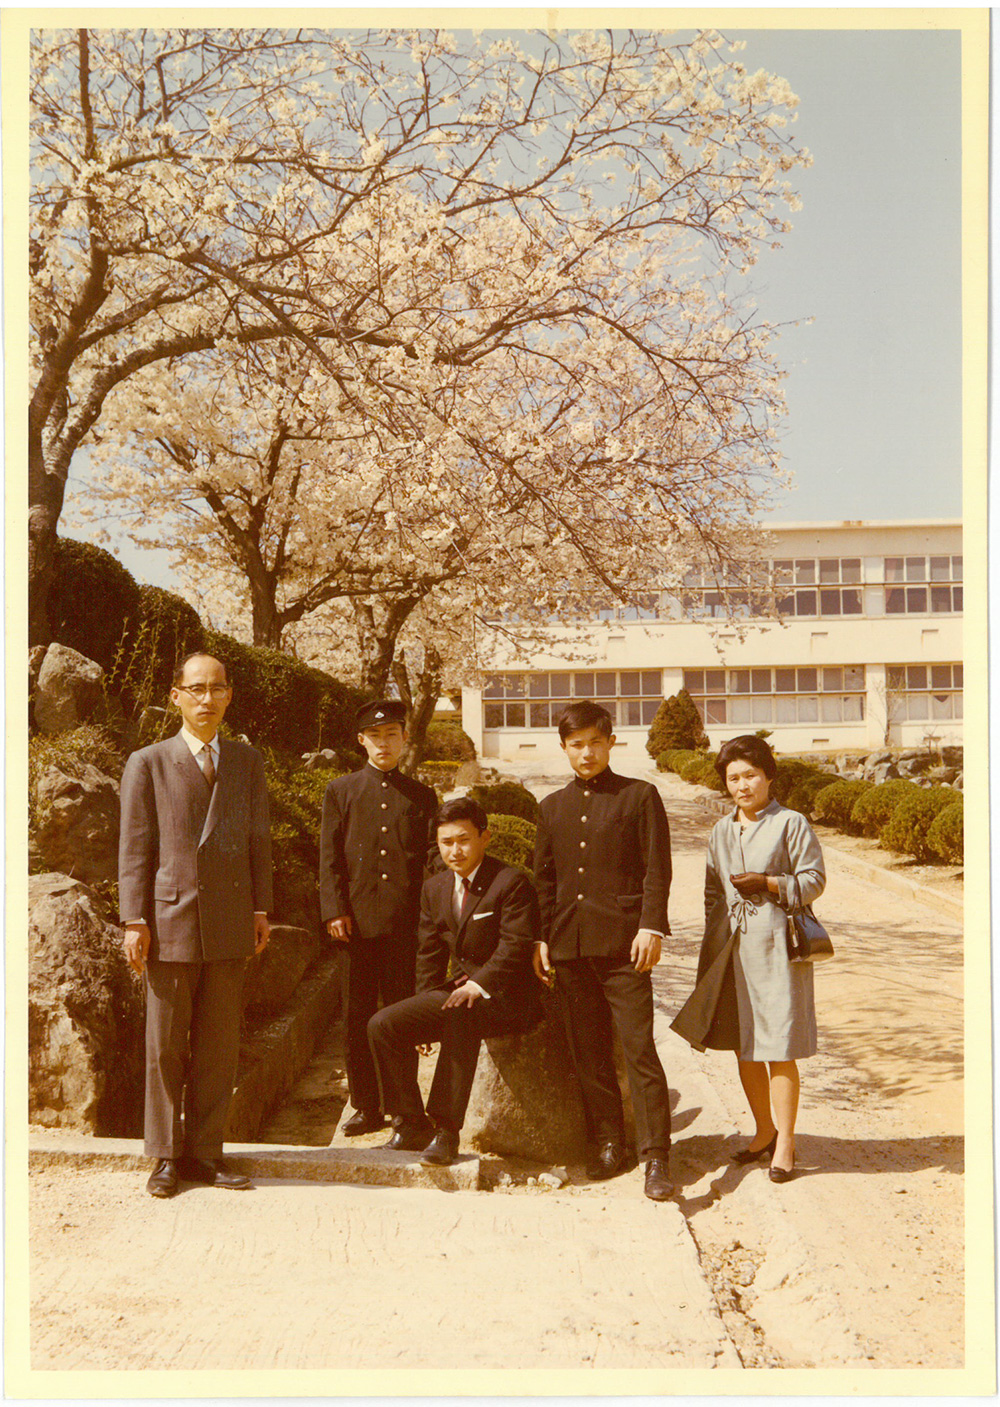 父(宗一)が初めて校長として勤務した高校の校門前にて家族写真